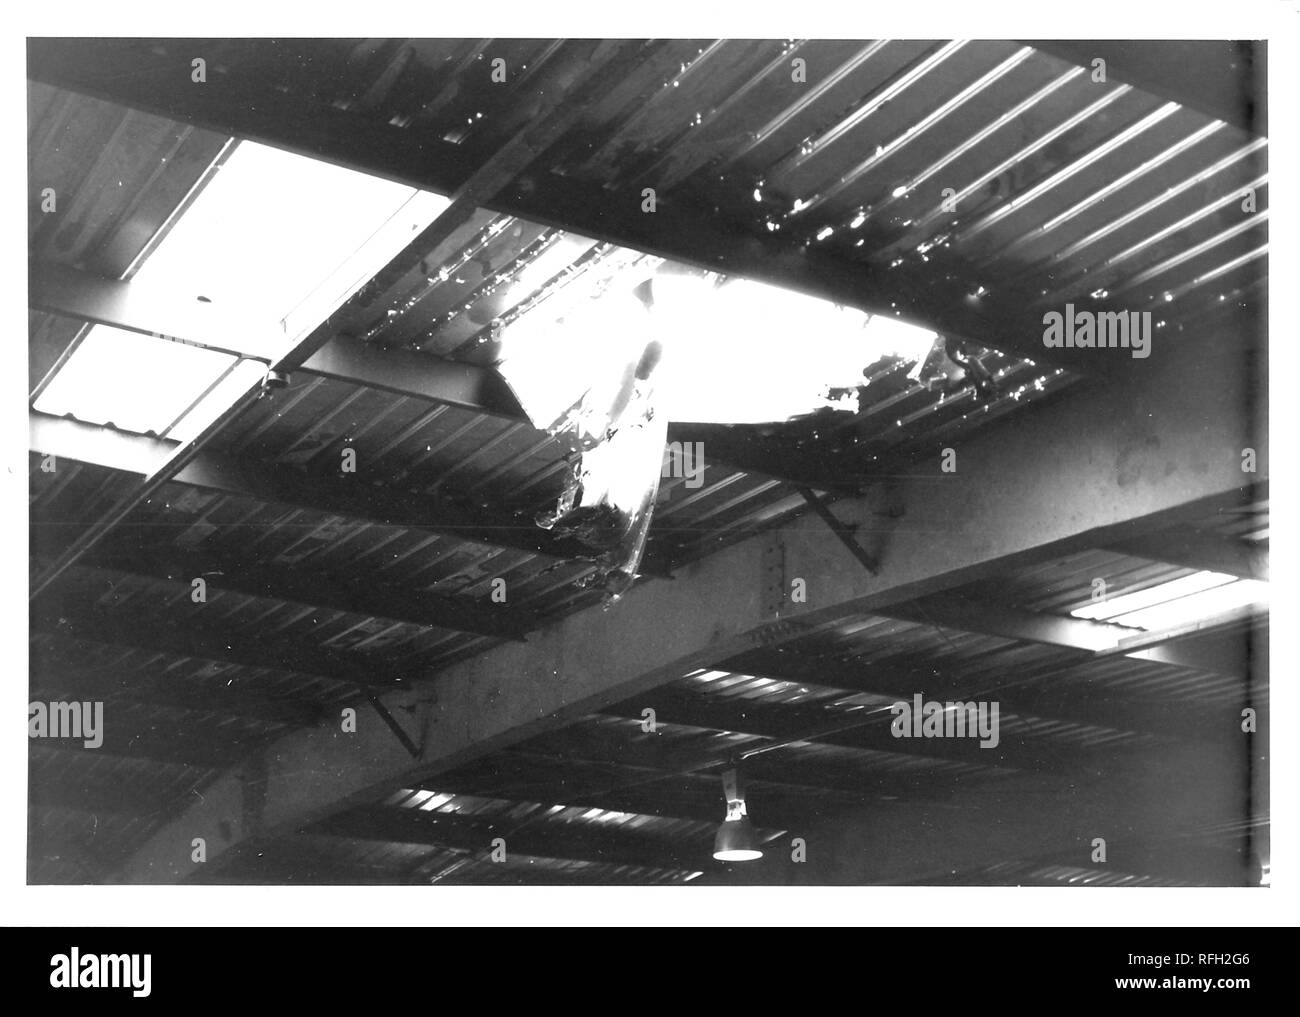 Fotografía en blanco y negro, mostrando el interior de un disparo de un edificio militar, con un agujero en su techo de metal corrugado, fotografiados durante la Guerra de Vietnam, 1968. () Foto de stock